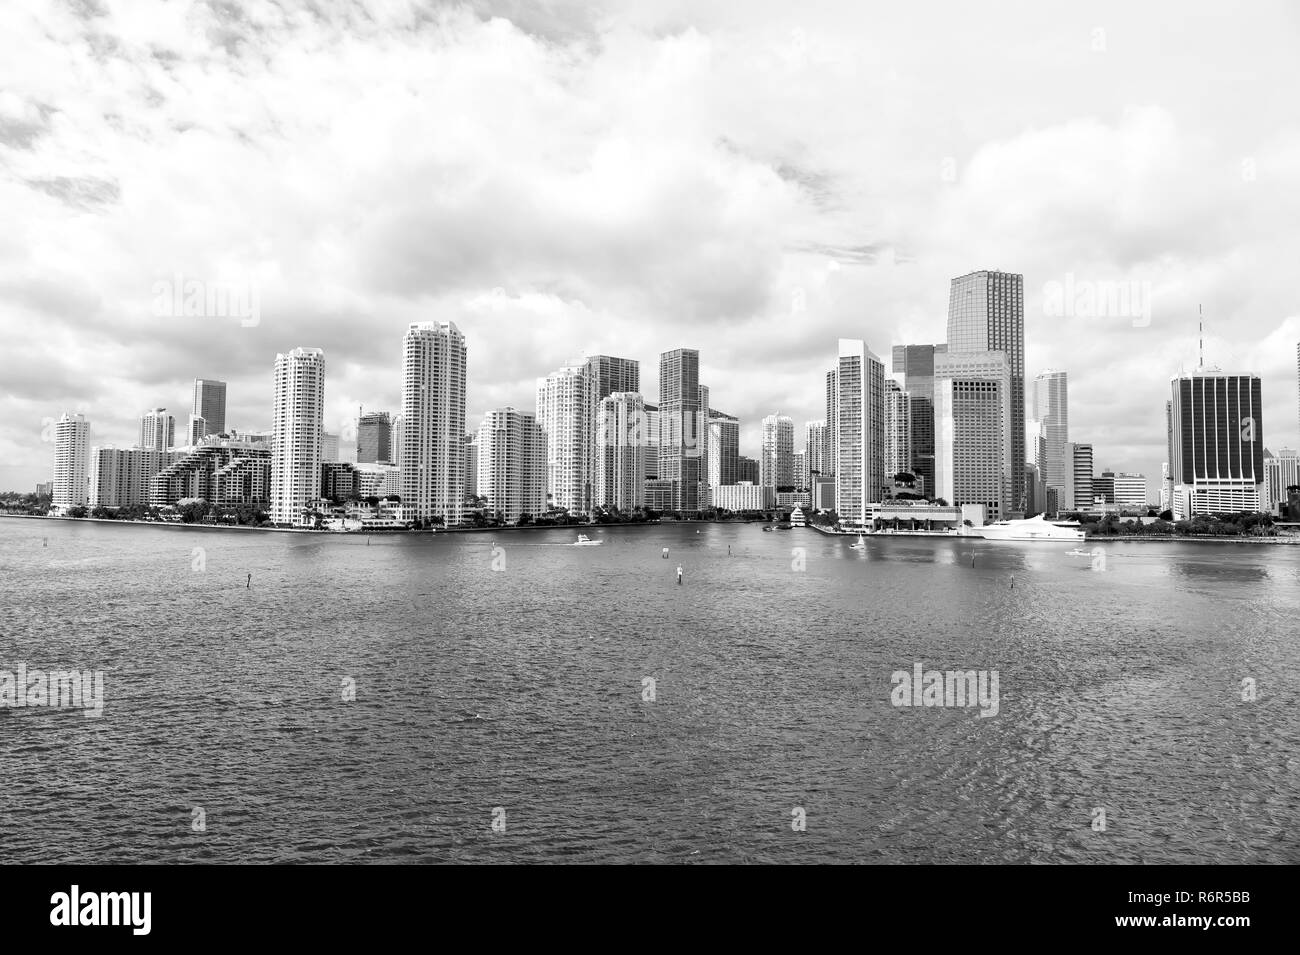 Vue sur Miami Downtown skyline gratte-ciel ensoleillé et à jour nuageux avec une architecture stupéfiante Banque D'Images